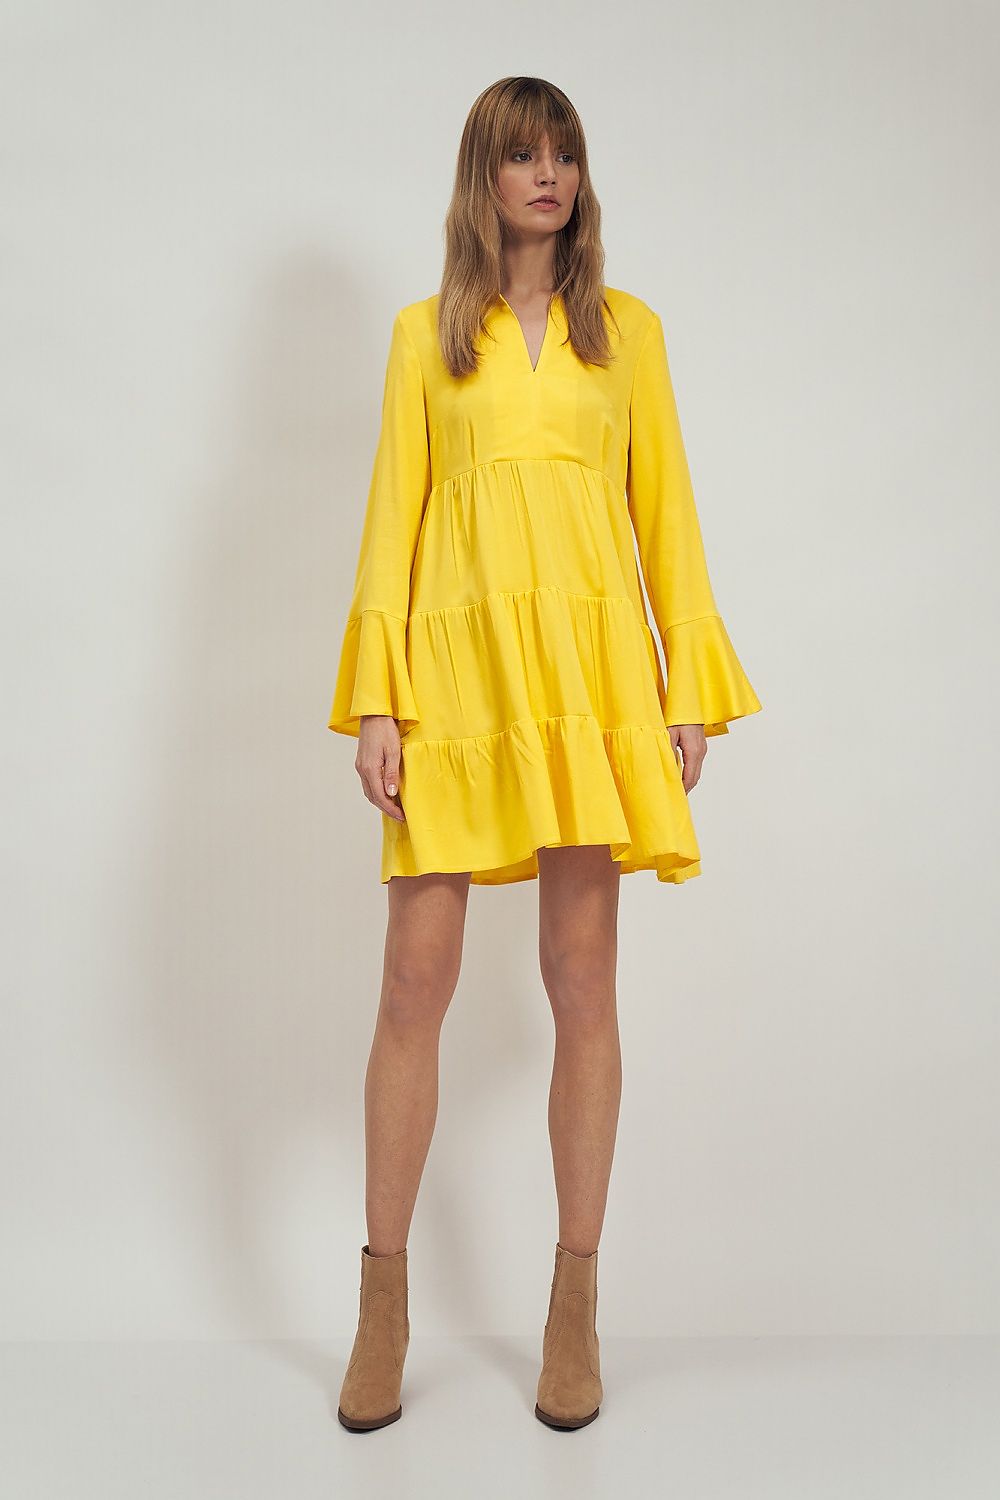 Yellow Sunshine Shift Dress